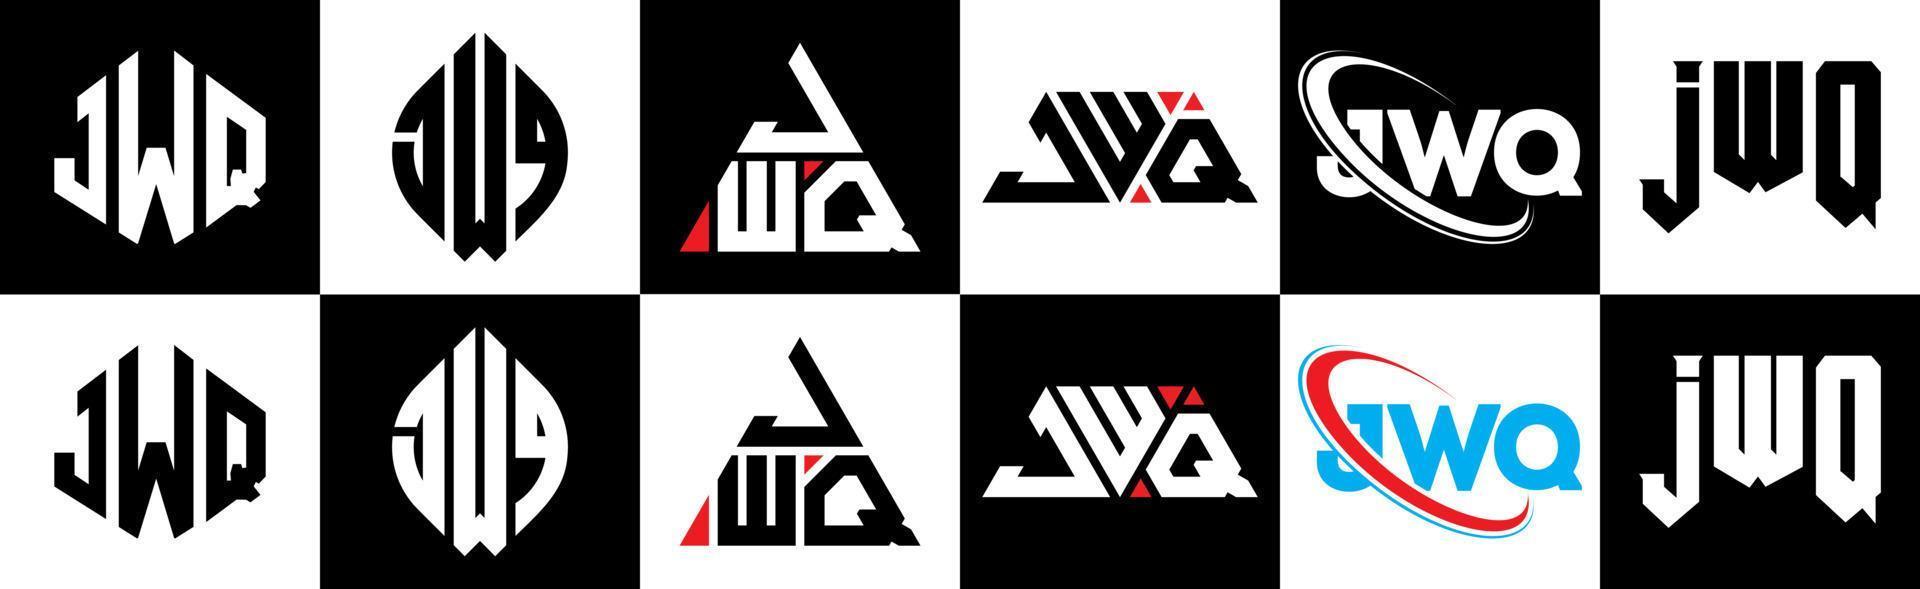 jwq-Buchstaben-Logo-Design in sechs Stilen. jwq Polygon, Kreis, Dreieck, Sechseck, flacher und einfacher Stil mit schwarz-weißem Buchstabenlogo in einer Zeichenfläche. jwq minimalistisches und klassisches Logo vektor